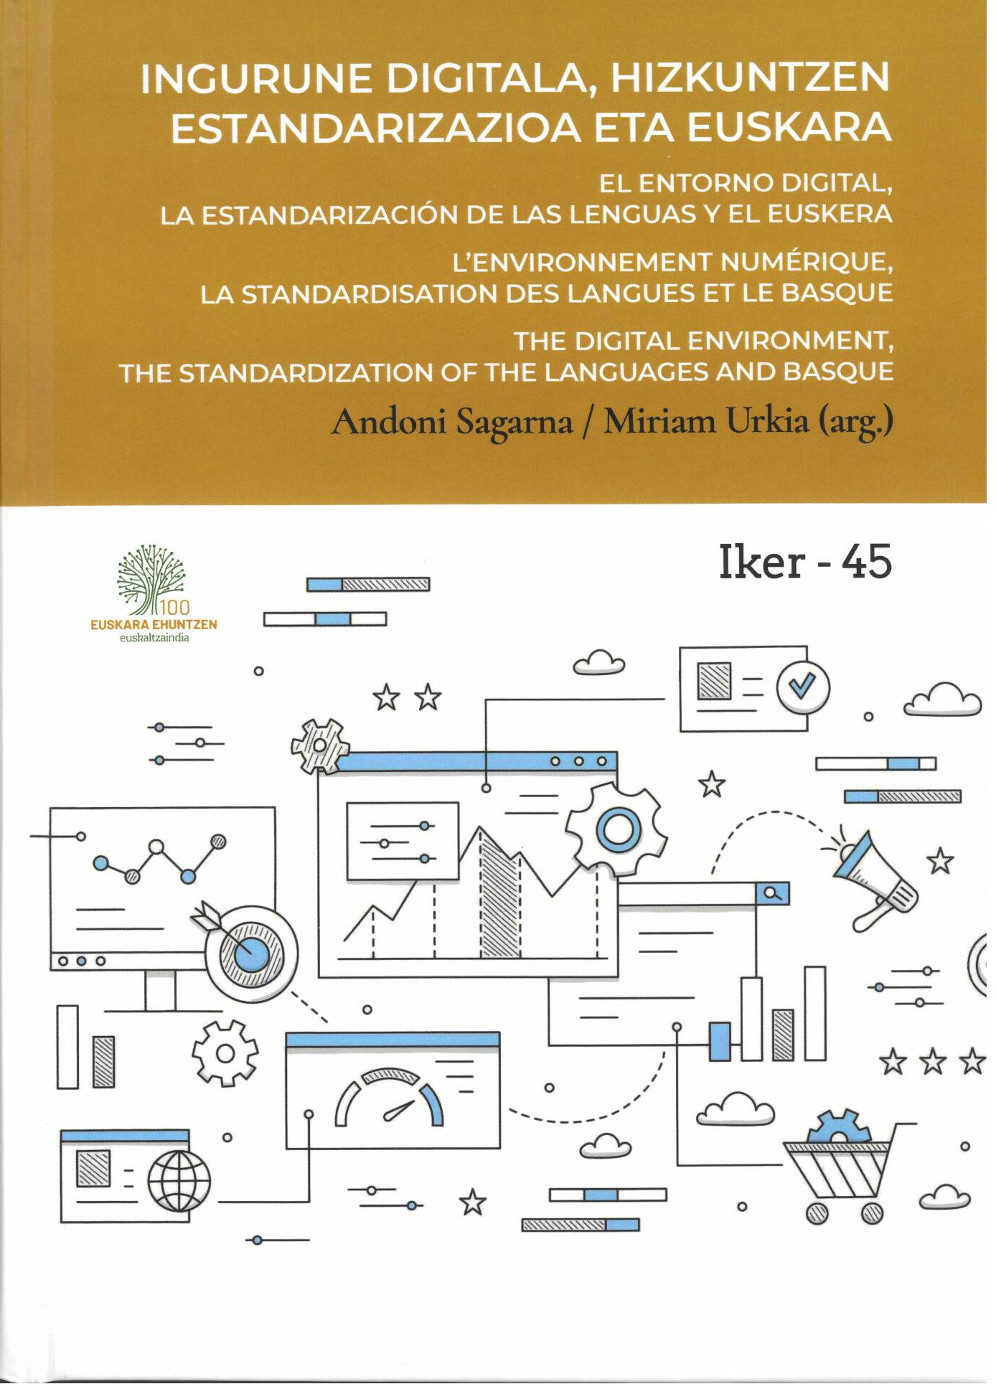 Imagen de portada del libro Ingurune digitala, hizkuntzen estandarizazioa eta euskara